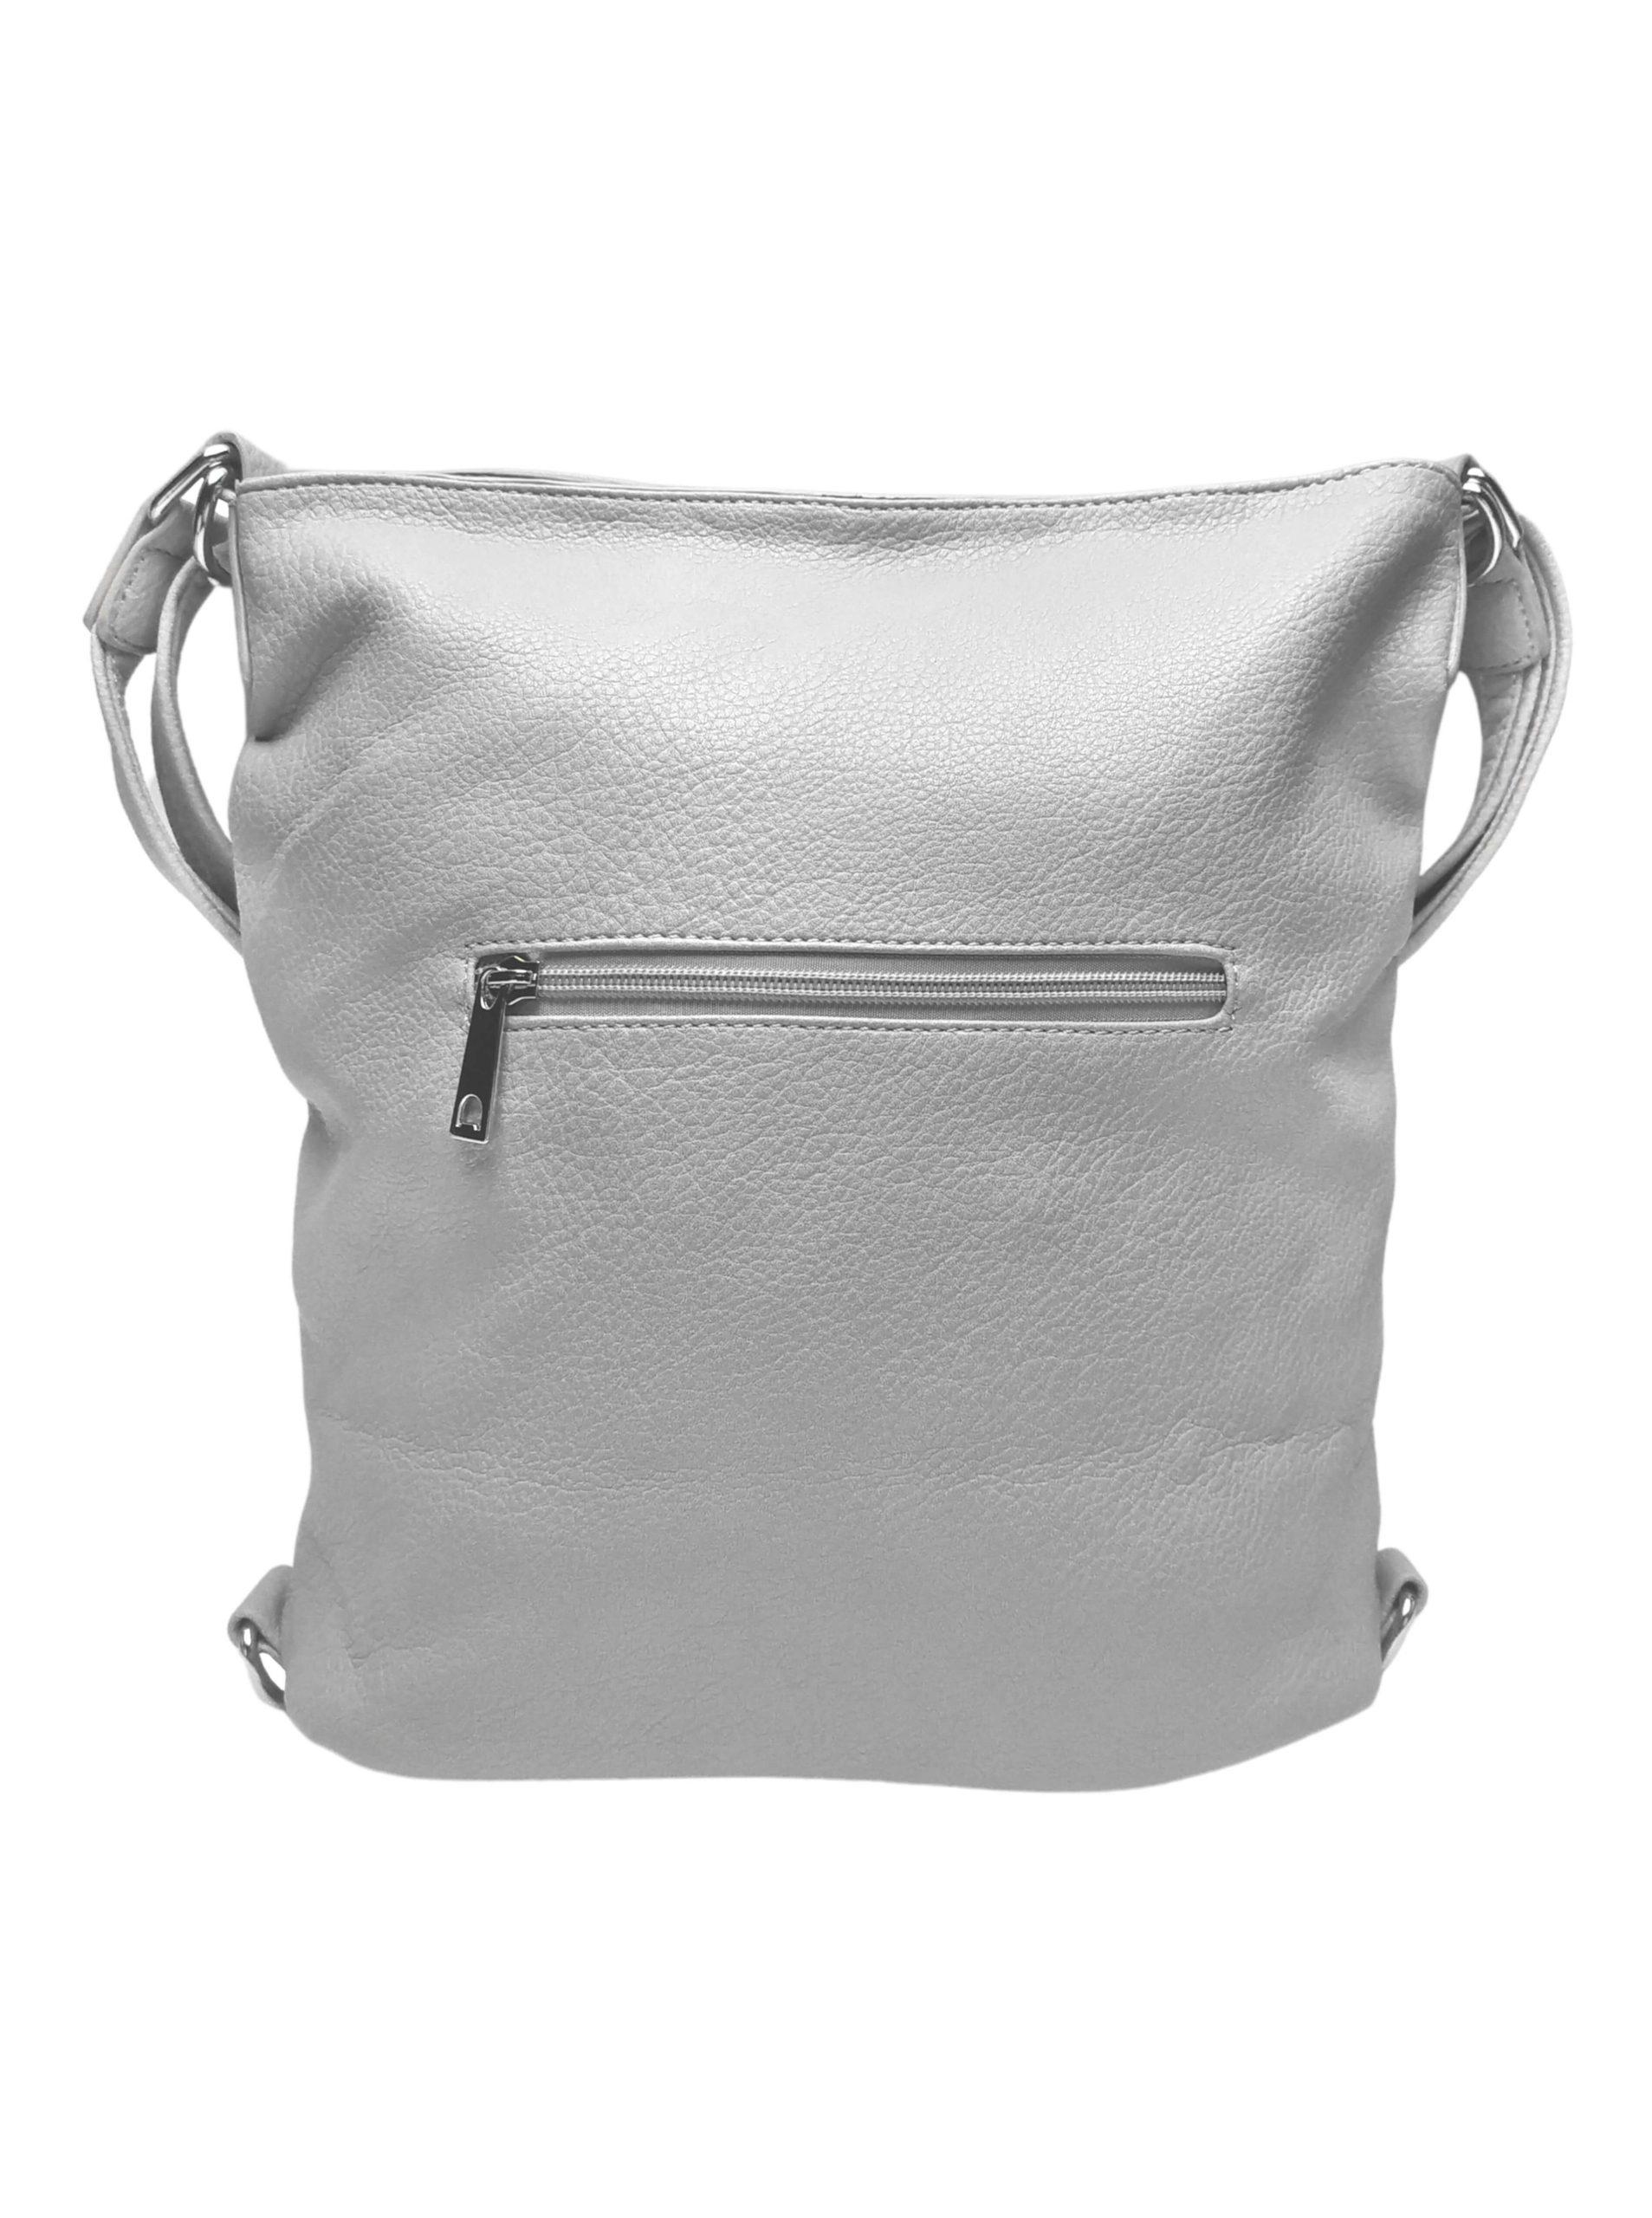 Střední světle šedý kabelko-batoh 2v1 s třásněmi, Bella Belly, 5394, zadní strana kabelko-batohu 2v1